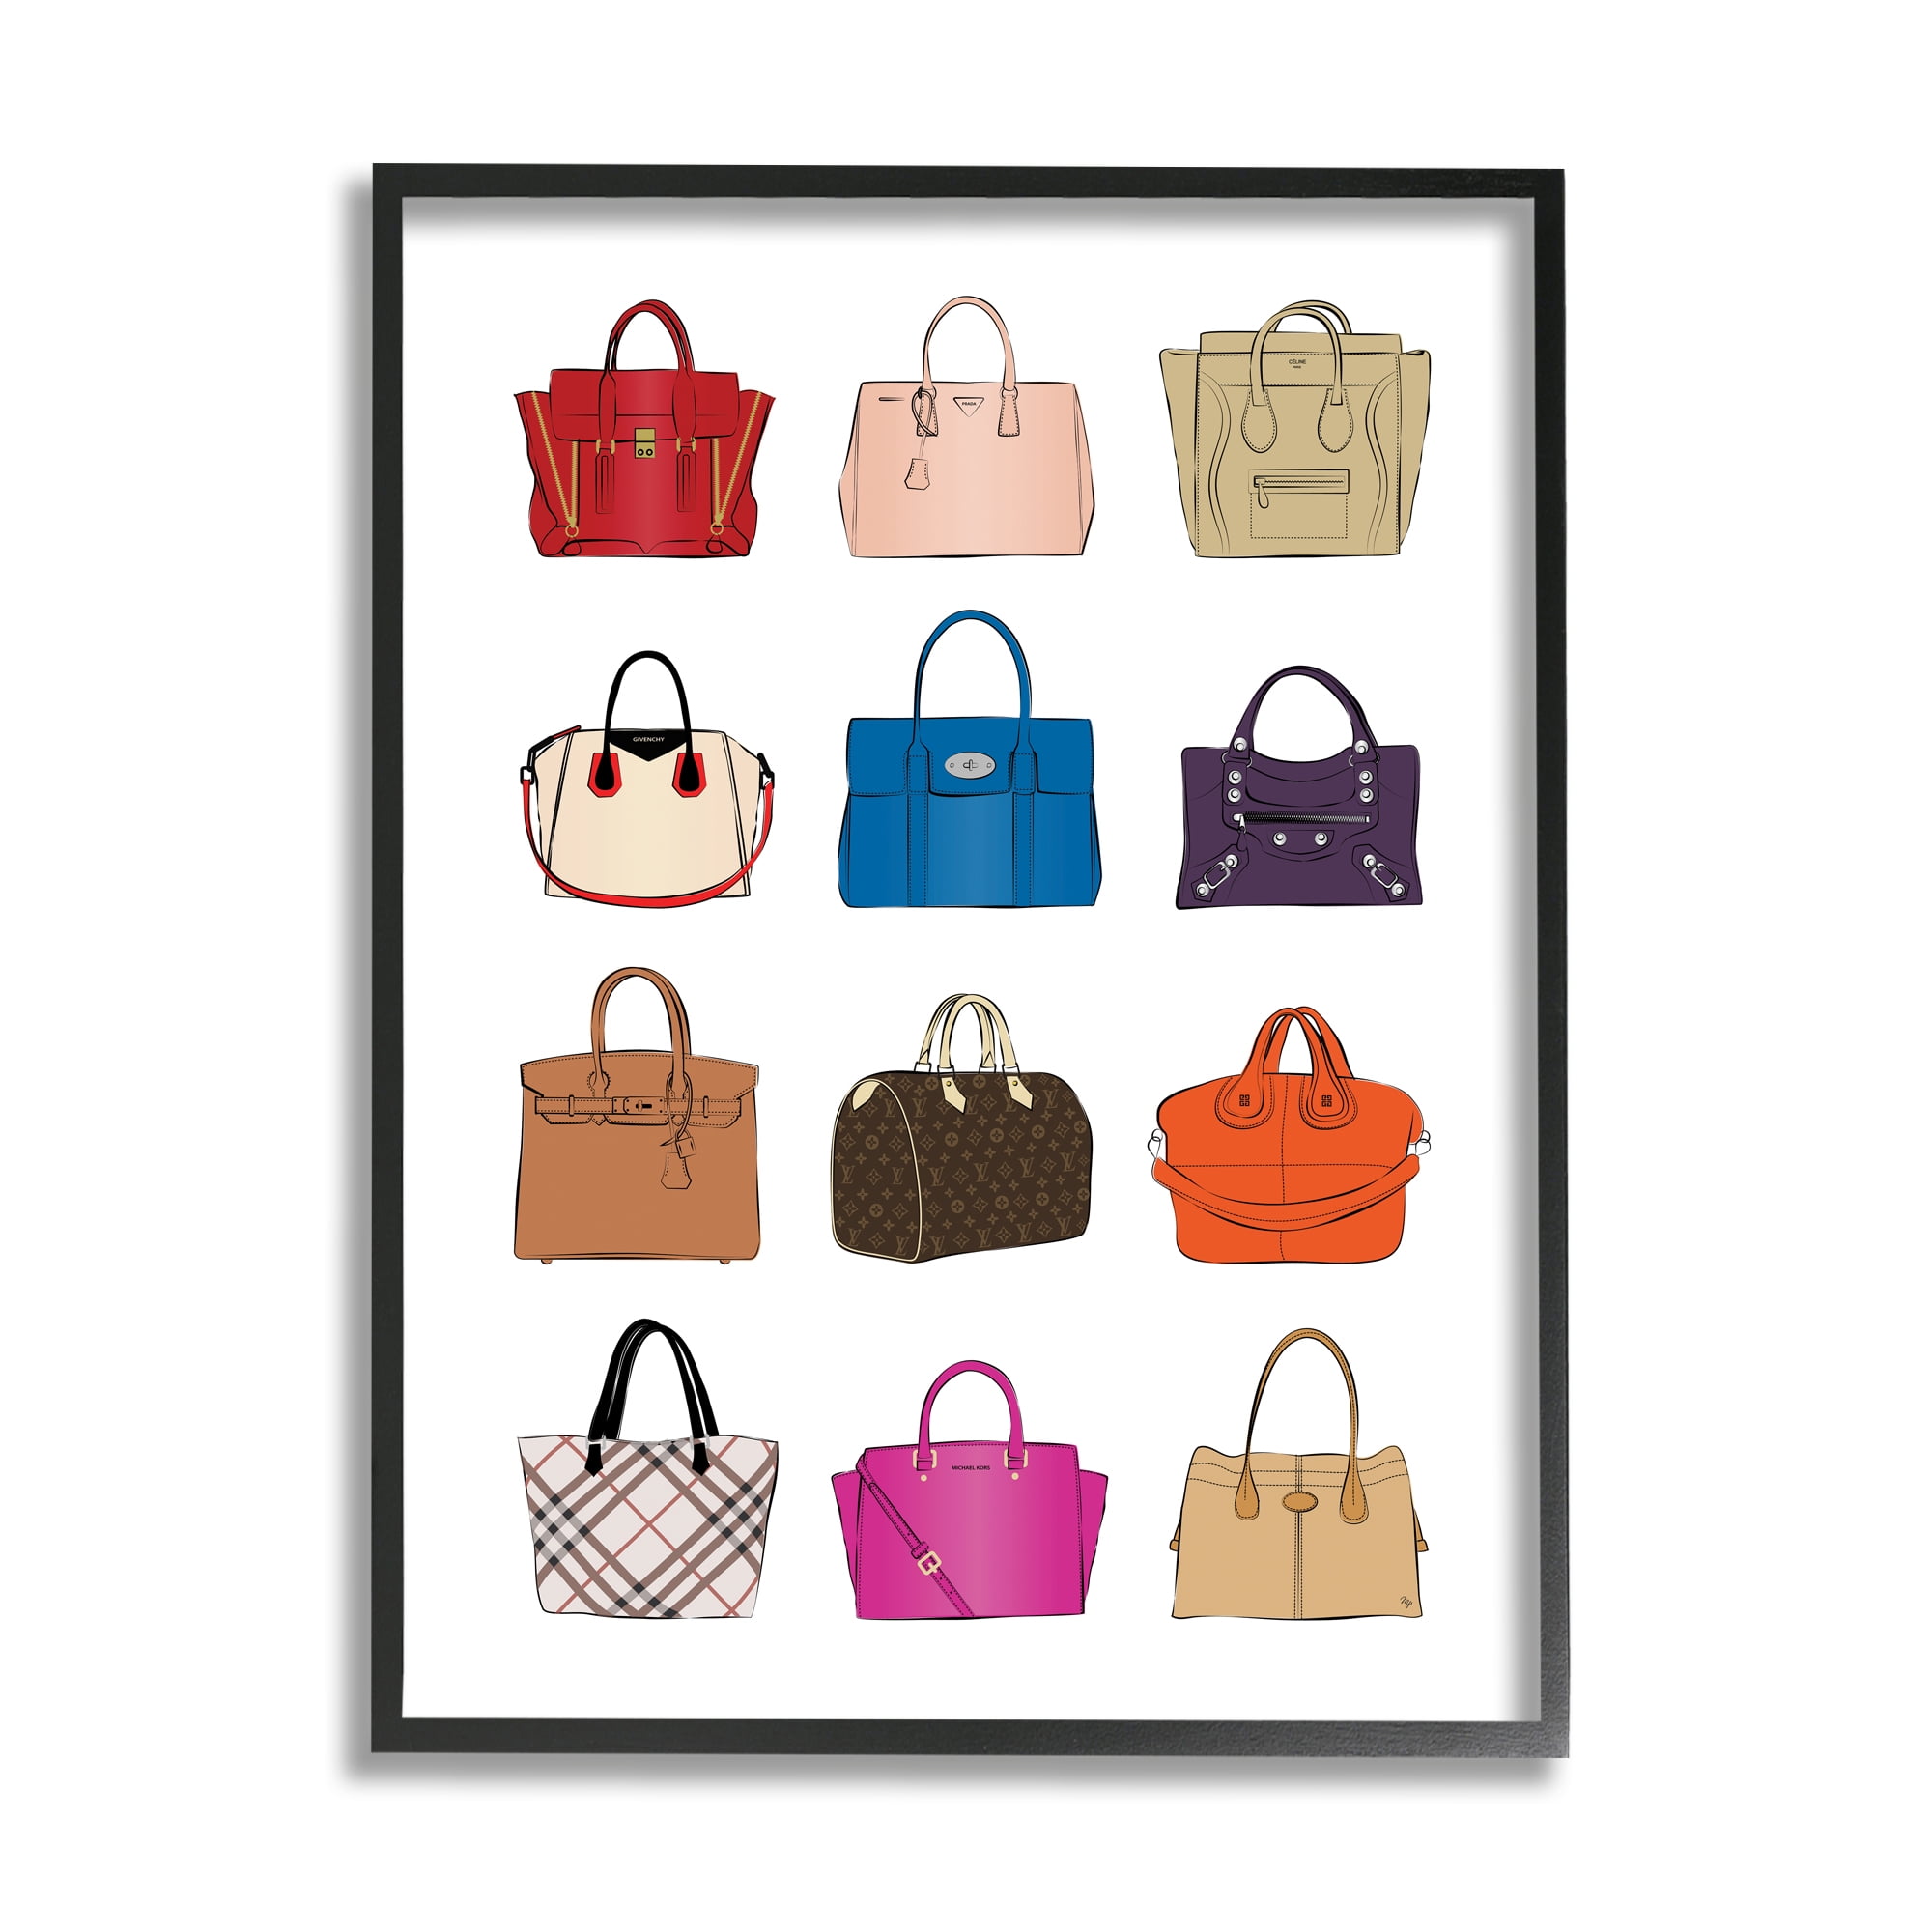 2PCS Wooden Handles Handmade Bag Handbags Purse Handles Wallet DIY Sewing  Arm Bag Accessory .5cm 16.5cm - Walmart.com